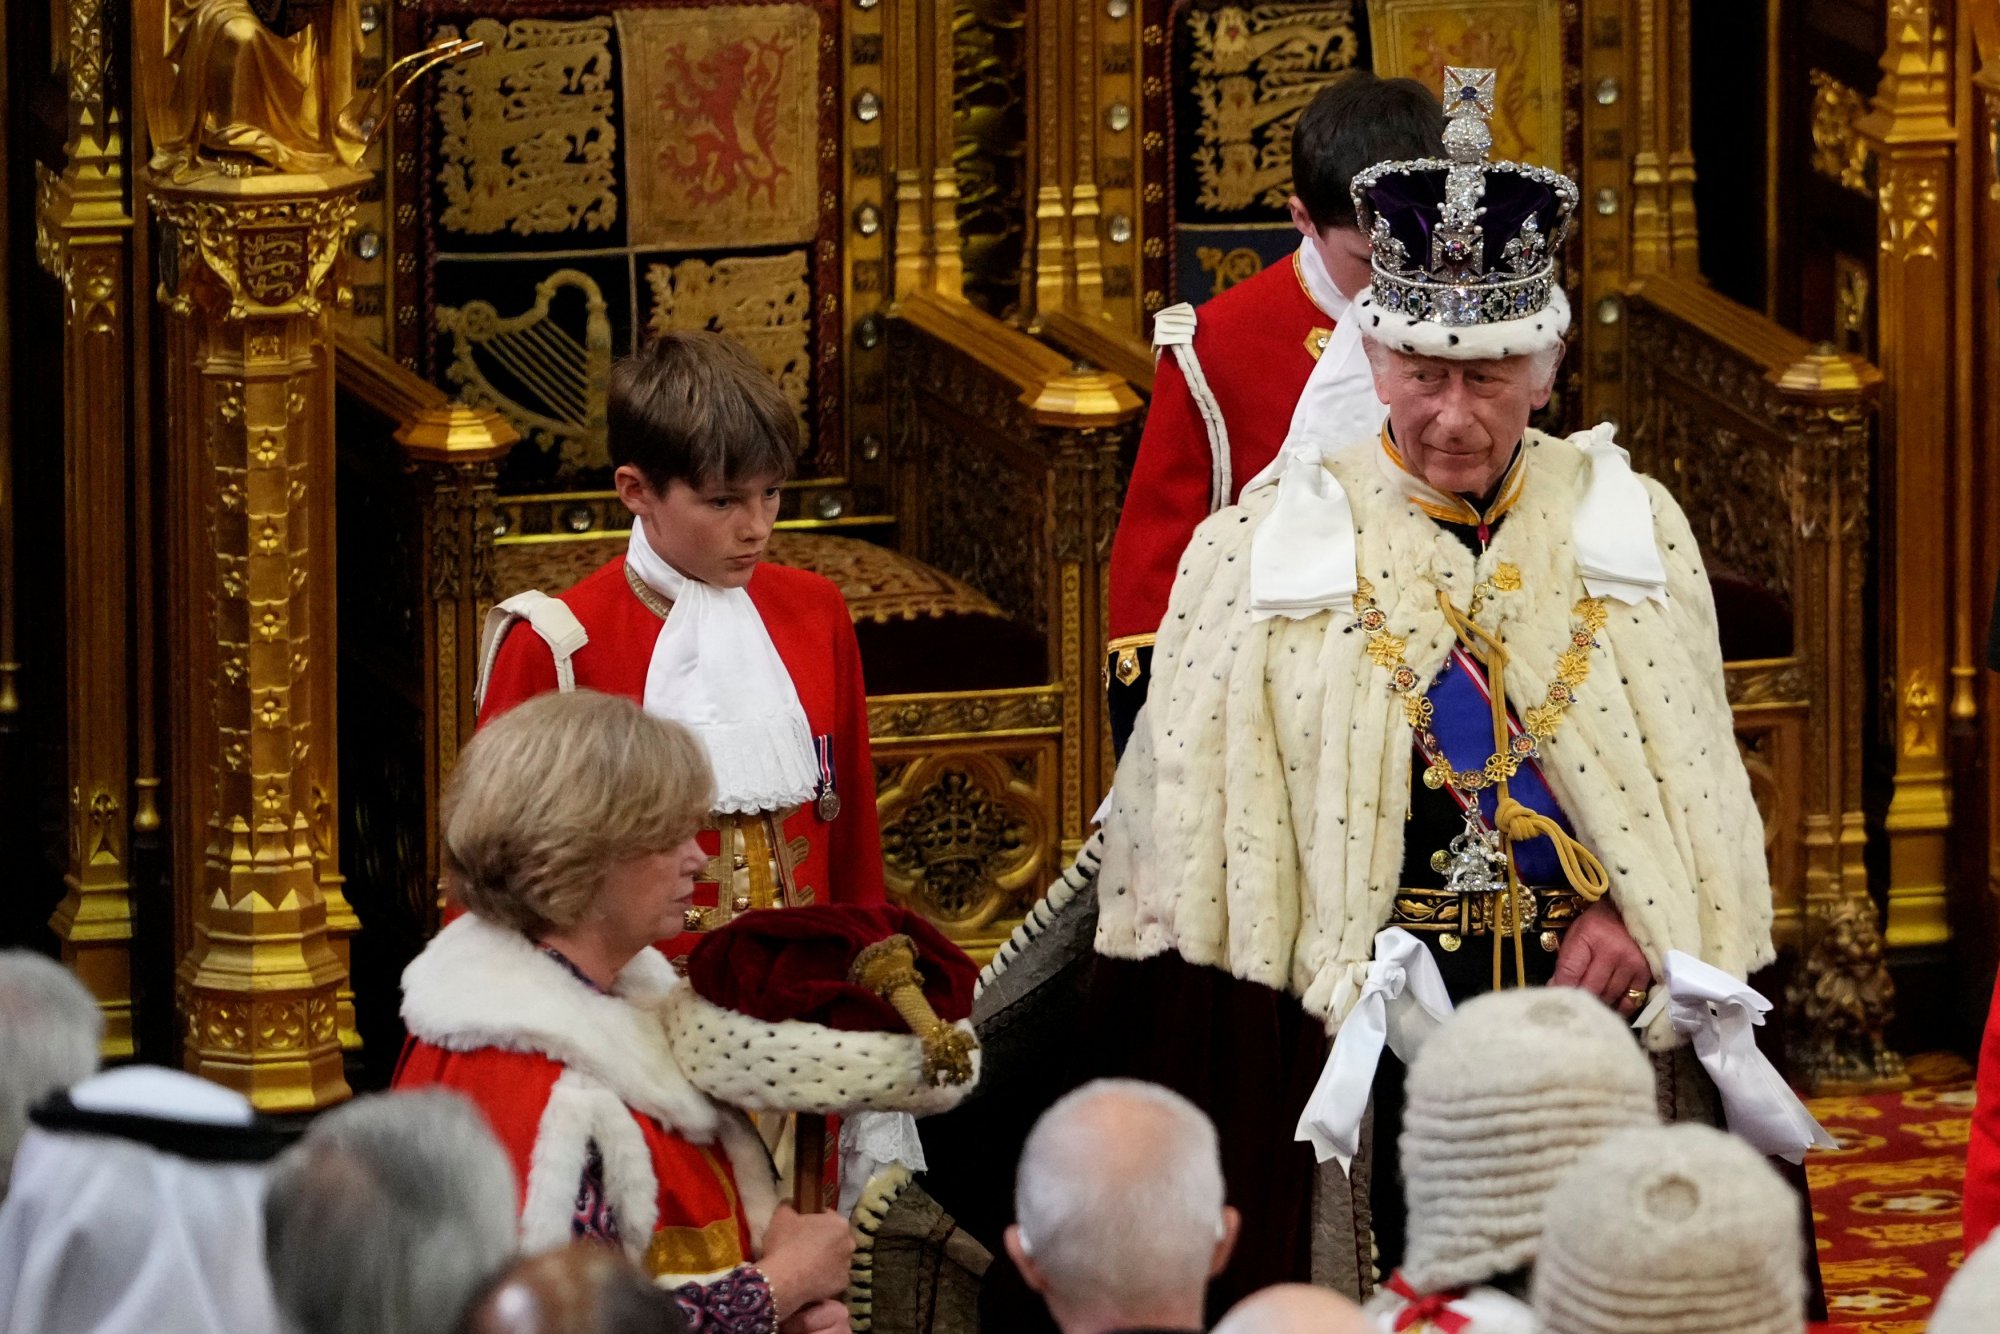 Βρετανία: Ο «λόγος του βασιλιά» στη βουλή - Η εντυπωσιακή τελετή και οι δεσμεύσεις Στάρμερ δια στόματος Καρόλου